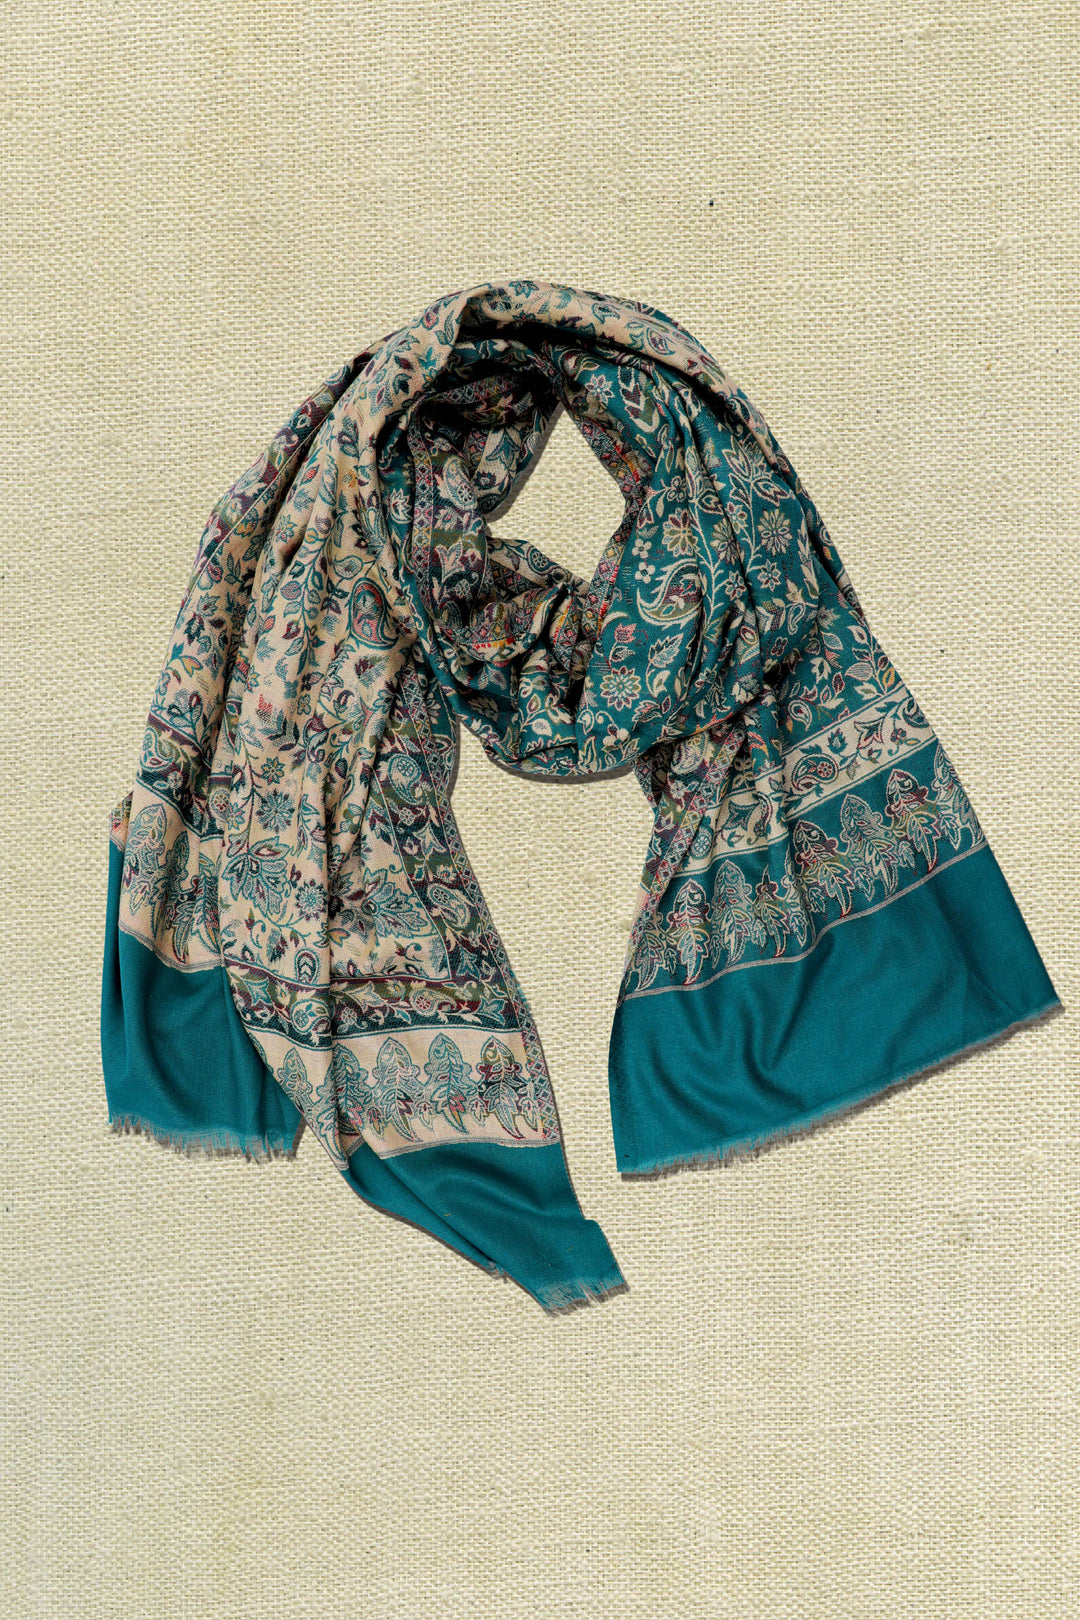 mayura woollen shawl